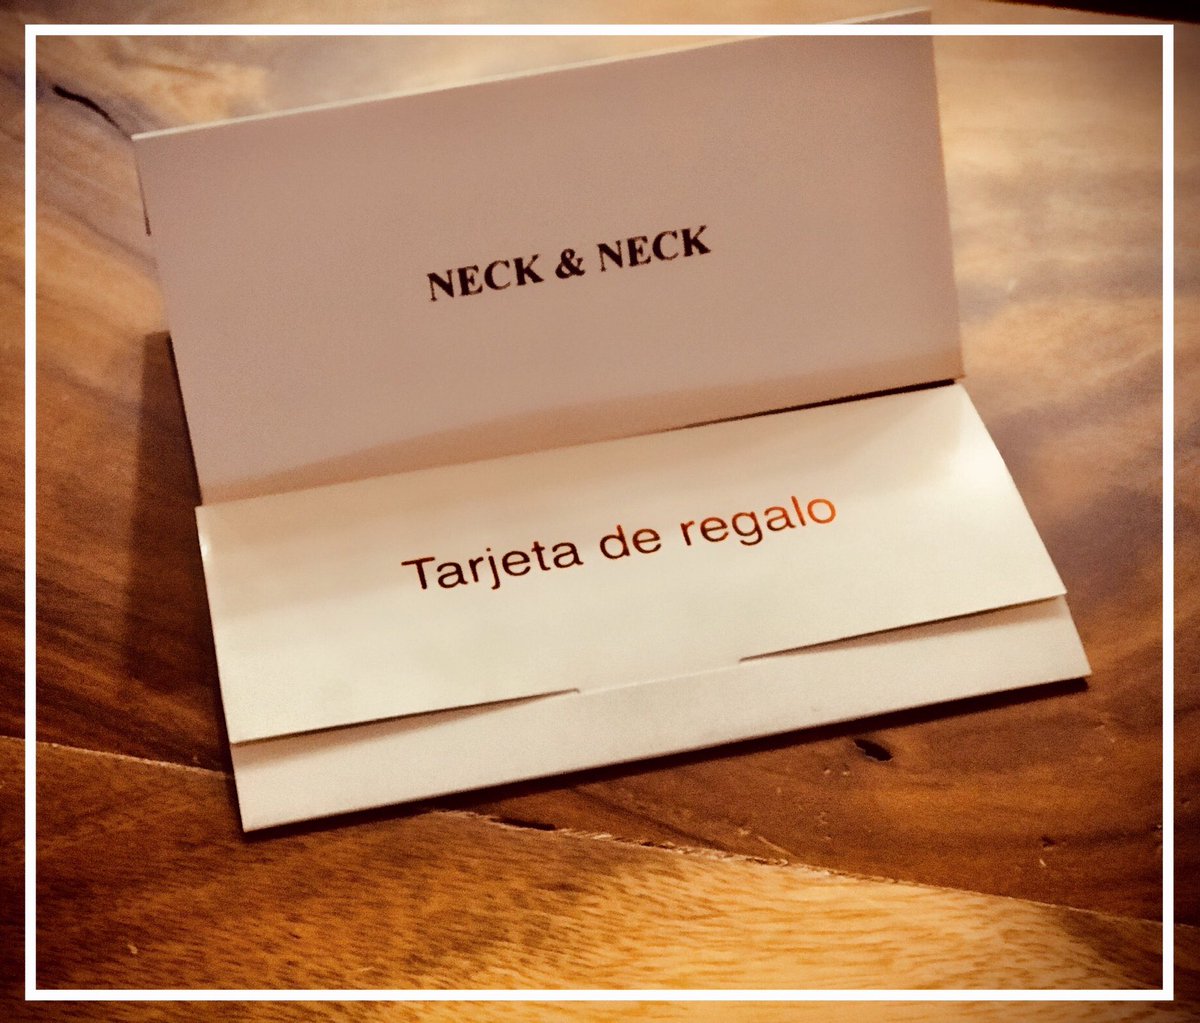 Tarjetas de regalo #Neckandneck 🎁